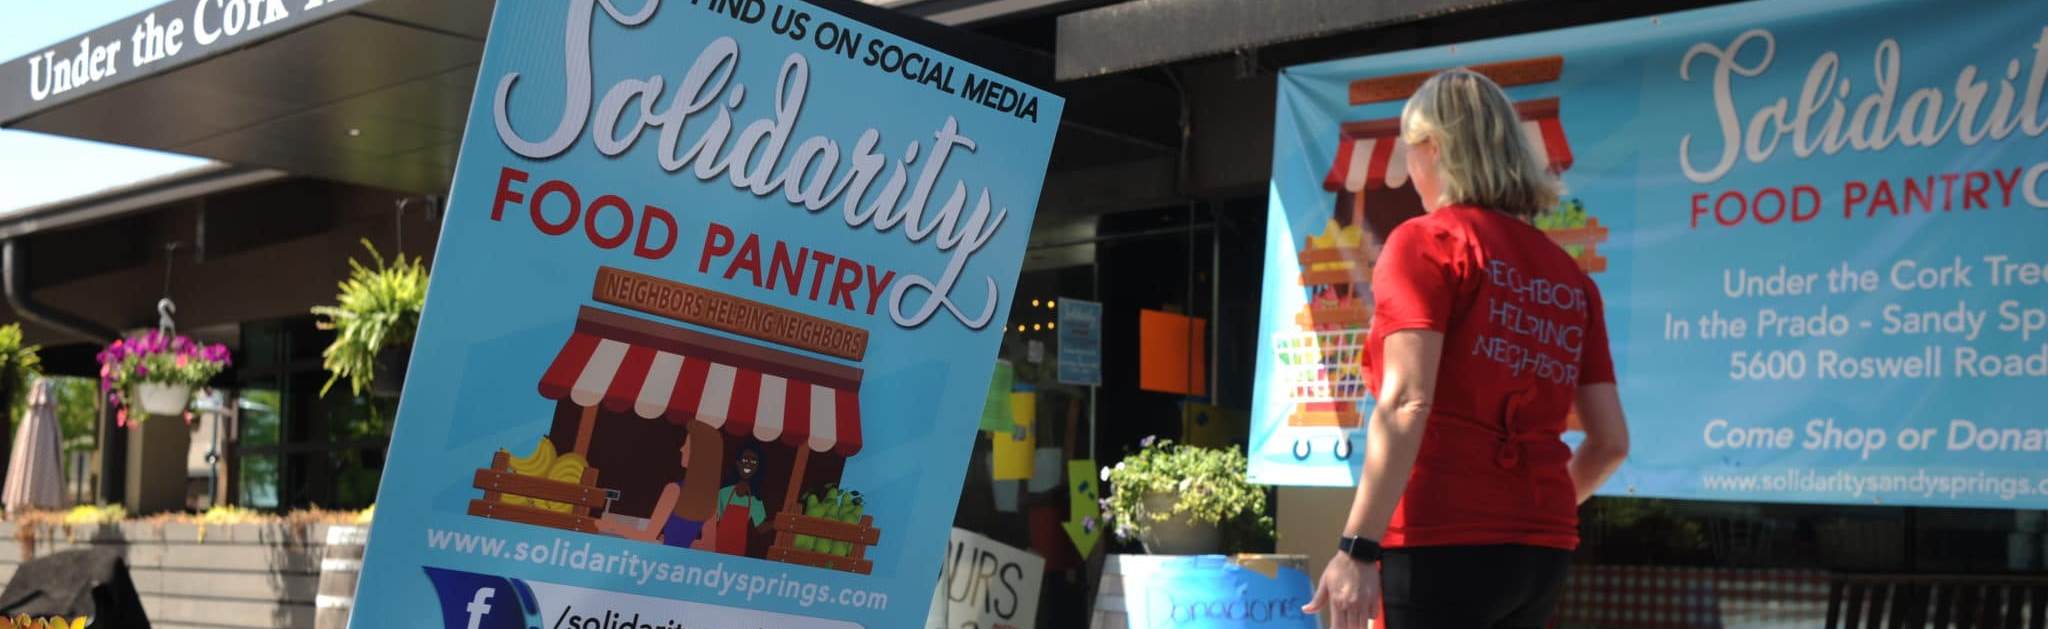 Solidarity Sandy Springs Food Pantry